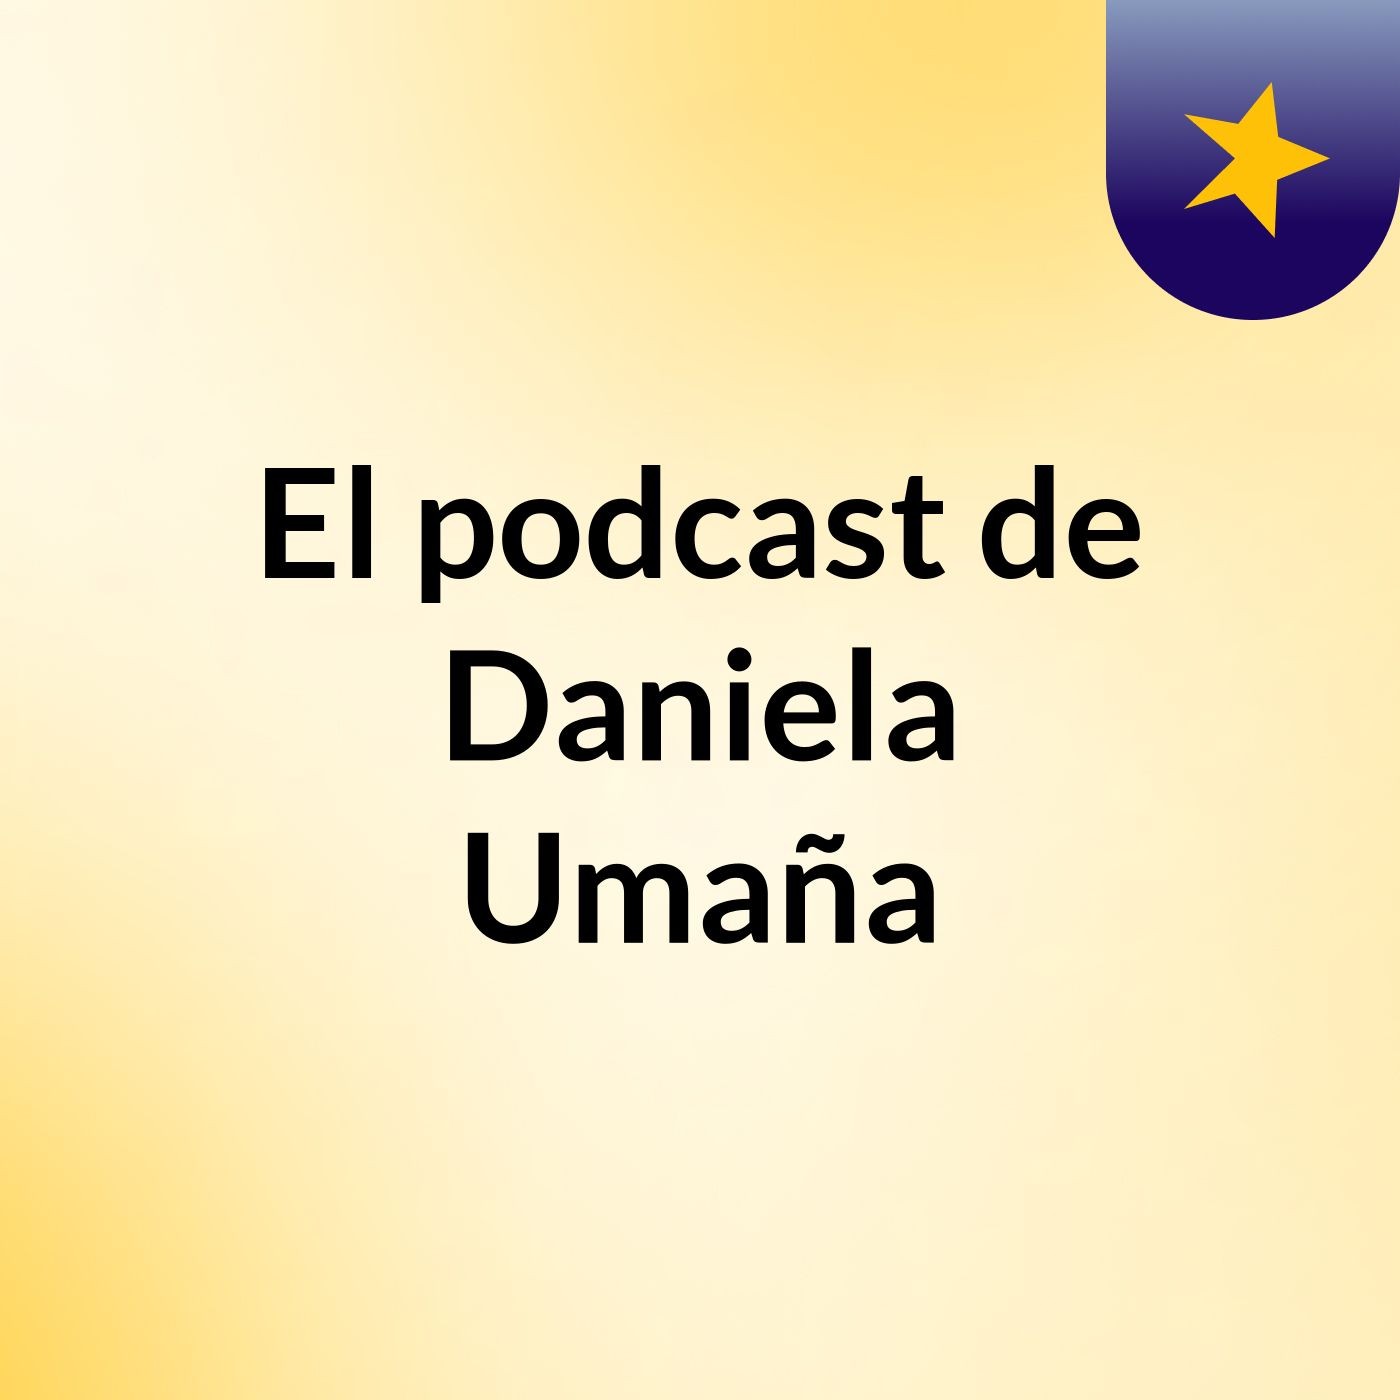 El podcast de Daniela Umaña